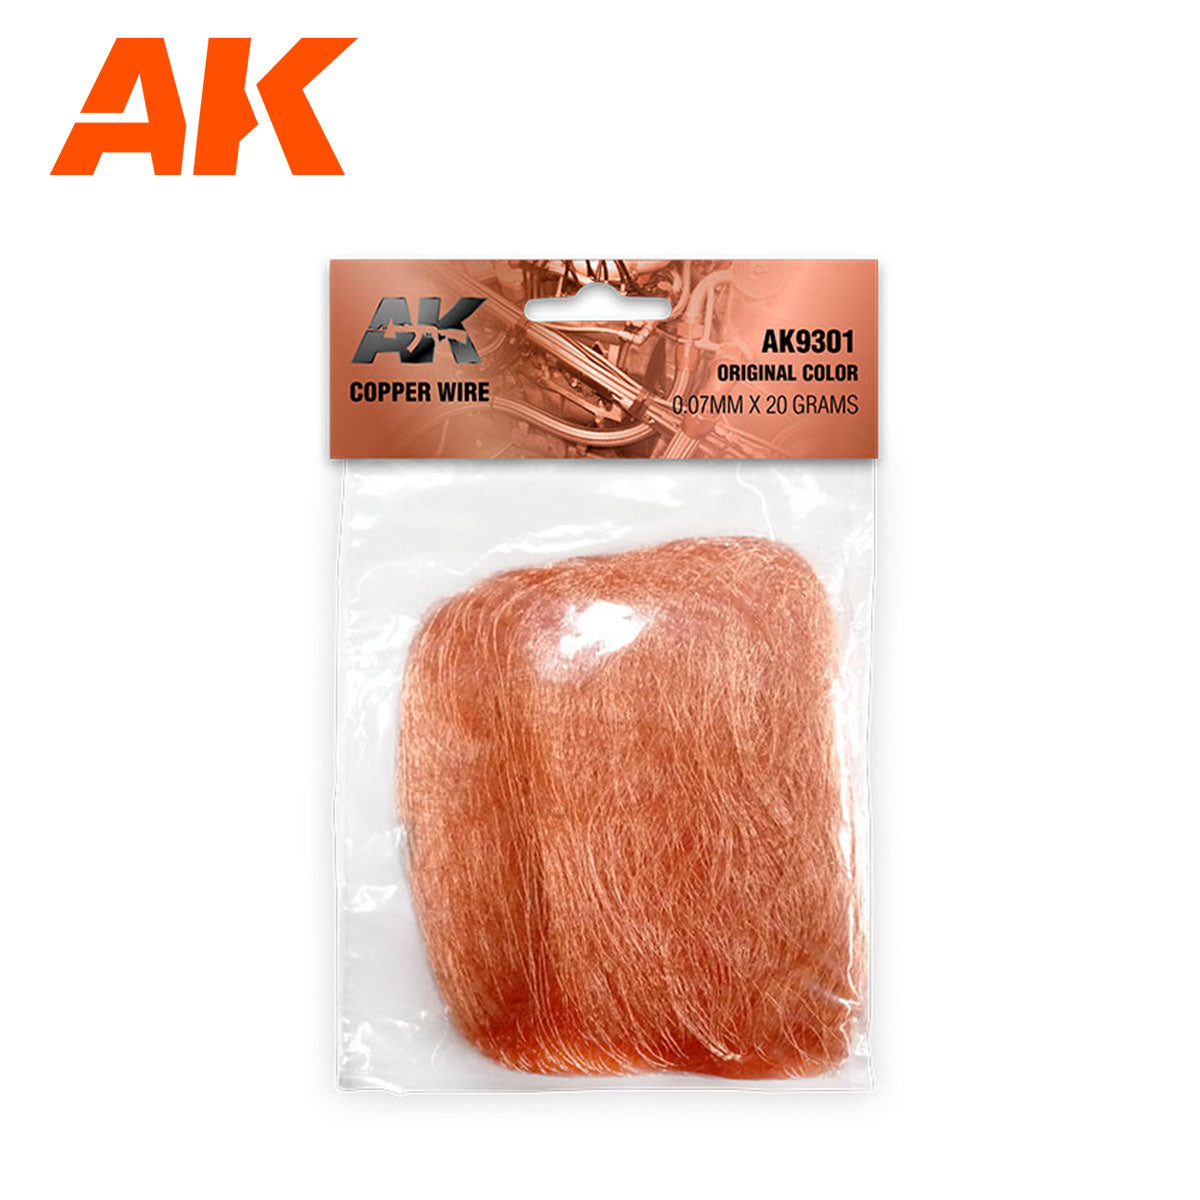 AK Interactive Copper Wire 0.07mm X 20 Grams Original Color